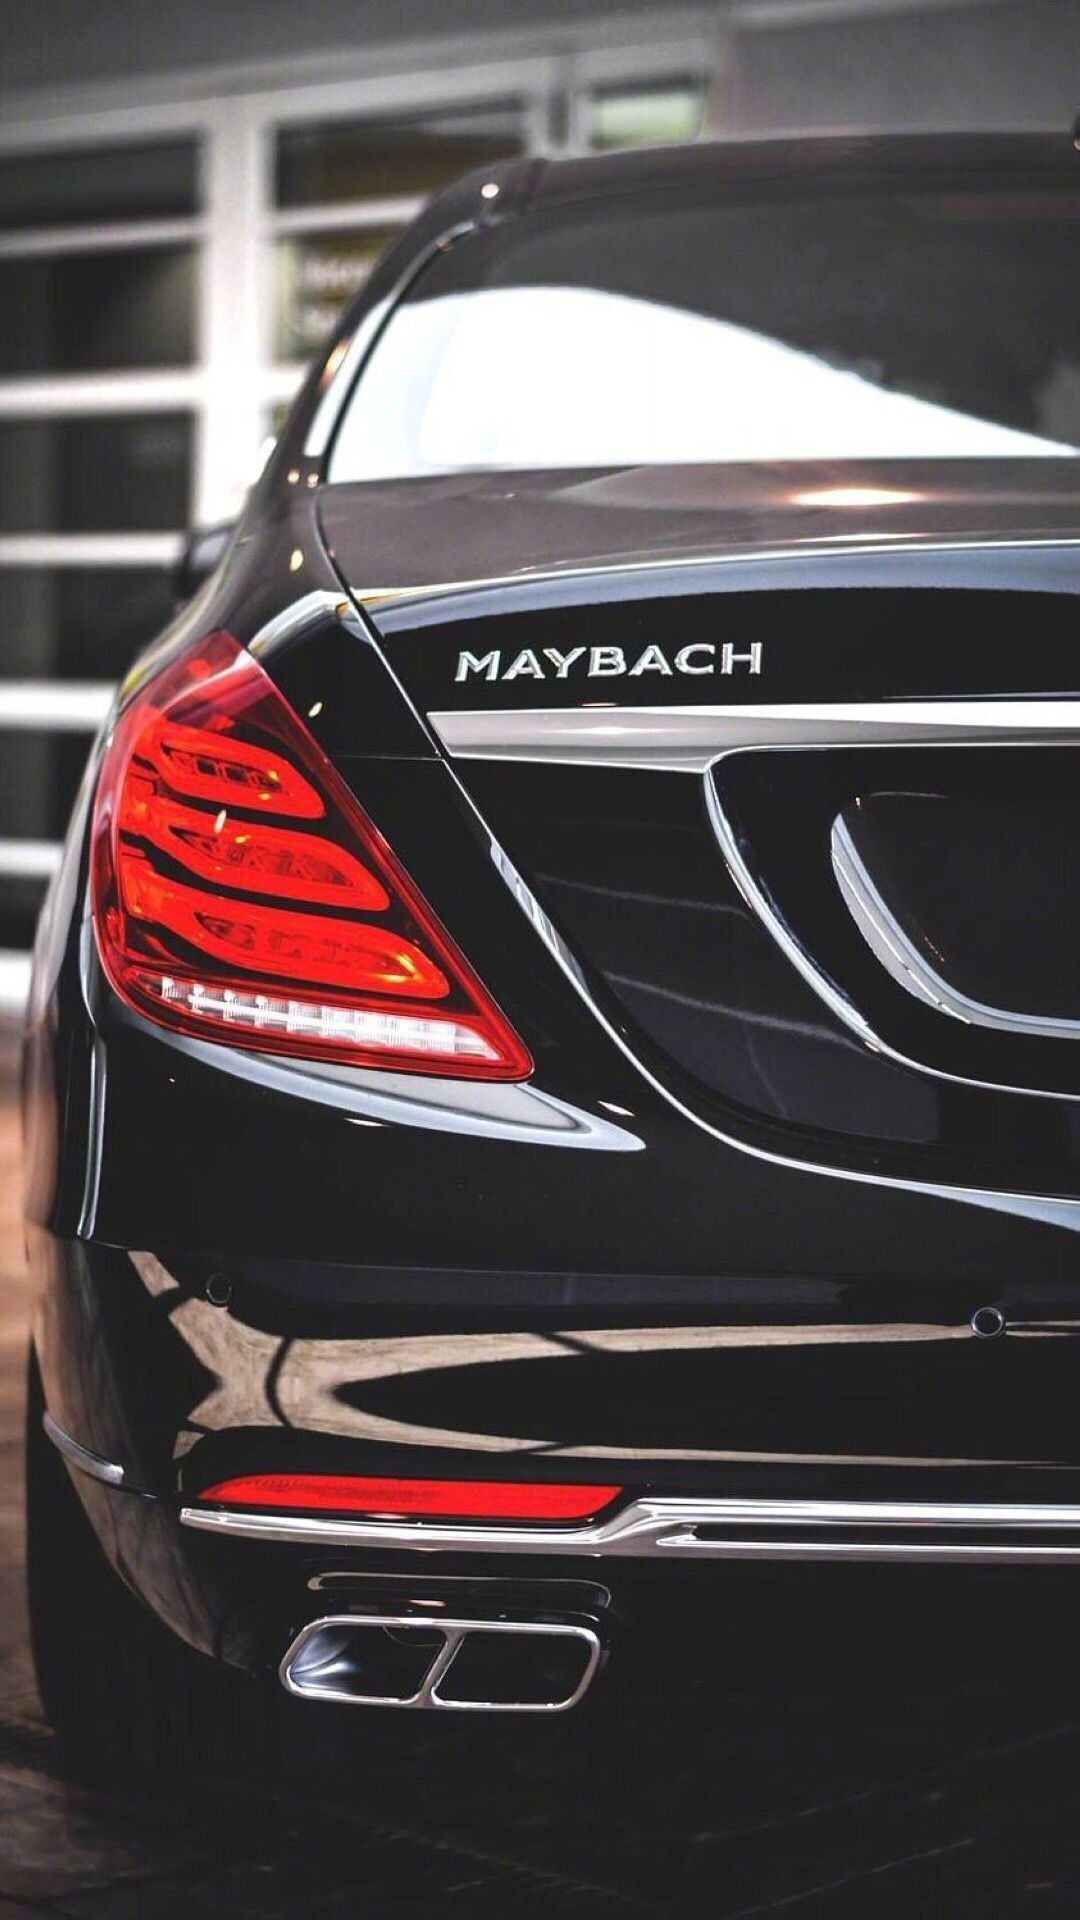 Mercedes benz maybach, Maybach car, Maybach.com